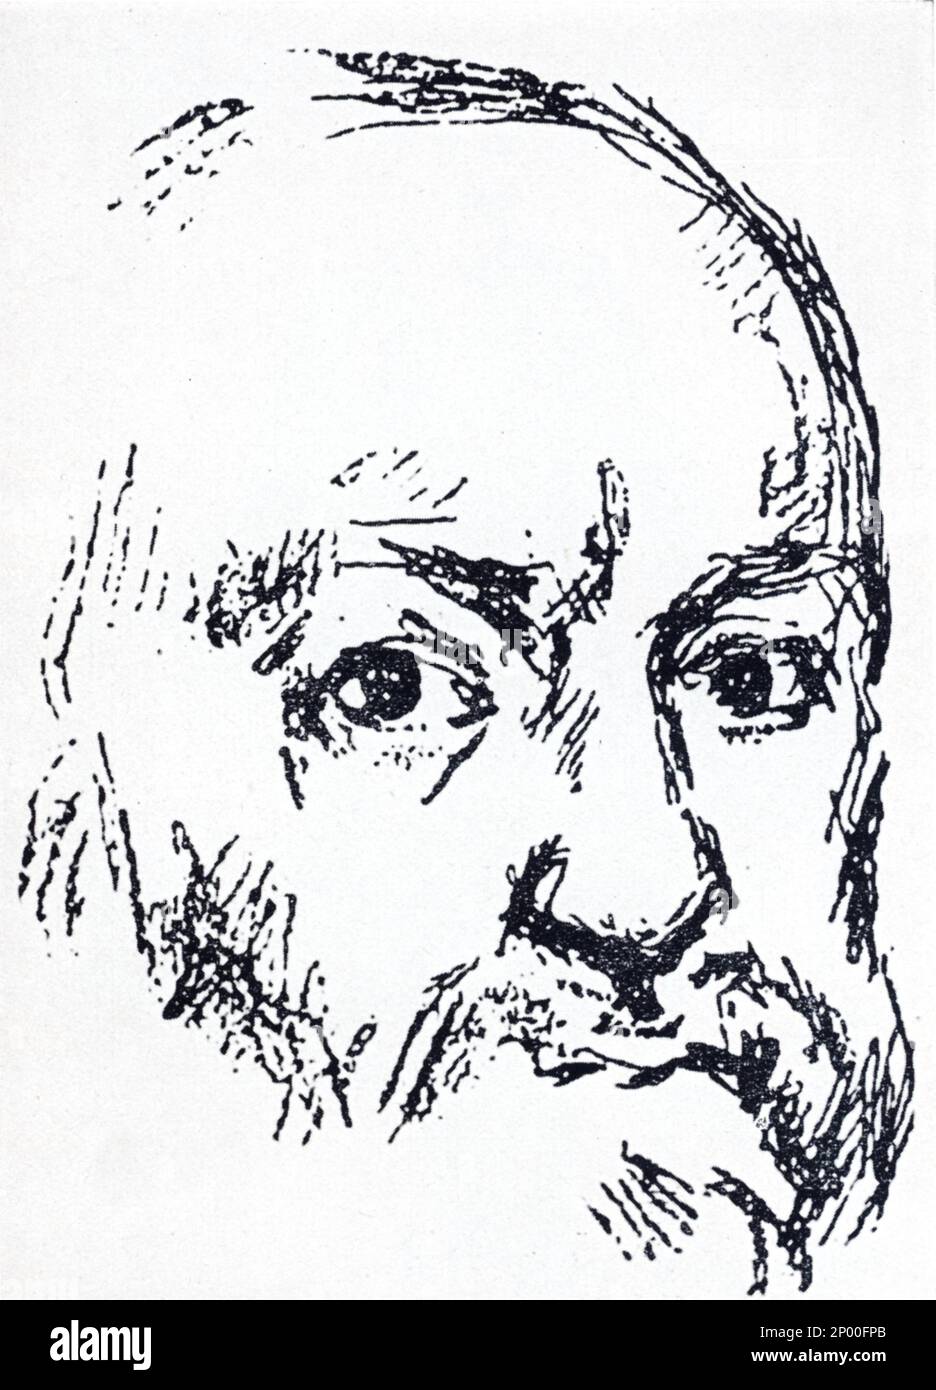 Der franzose gefeierte impressionistische Maler PAUL CEZANNE ( Aix-en-Provence 1839 - 1906 ) , Selbstporträt - IMPRESSIONISMO - IMPRESSIONISTA - IMPRESSIONISMUS - AUTORITRATTO - Selbstporträt - ARTISTA - PITTORE - barba - Bart - VISUELLE KUNST - ARTI VISIVE - Archipittura - GBB- Stockfoto